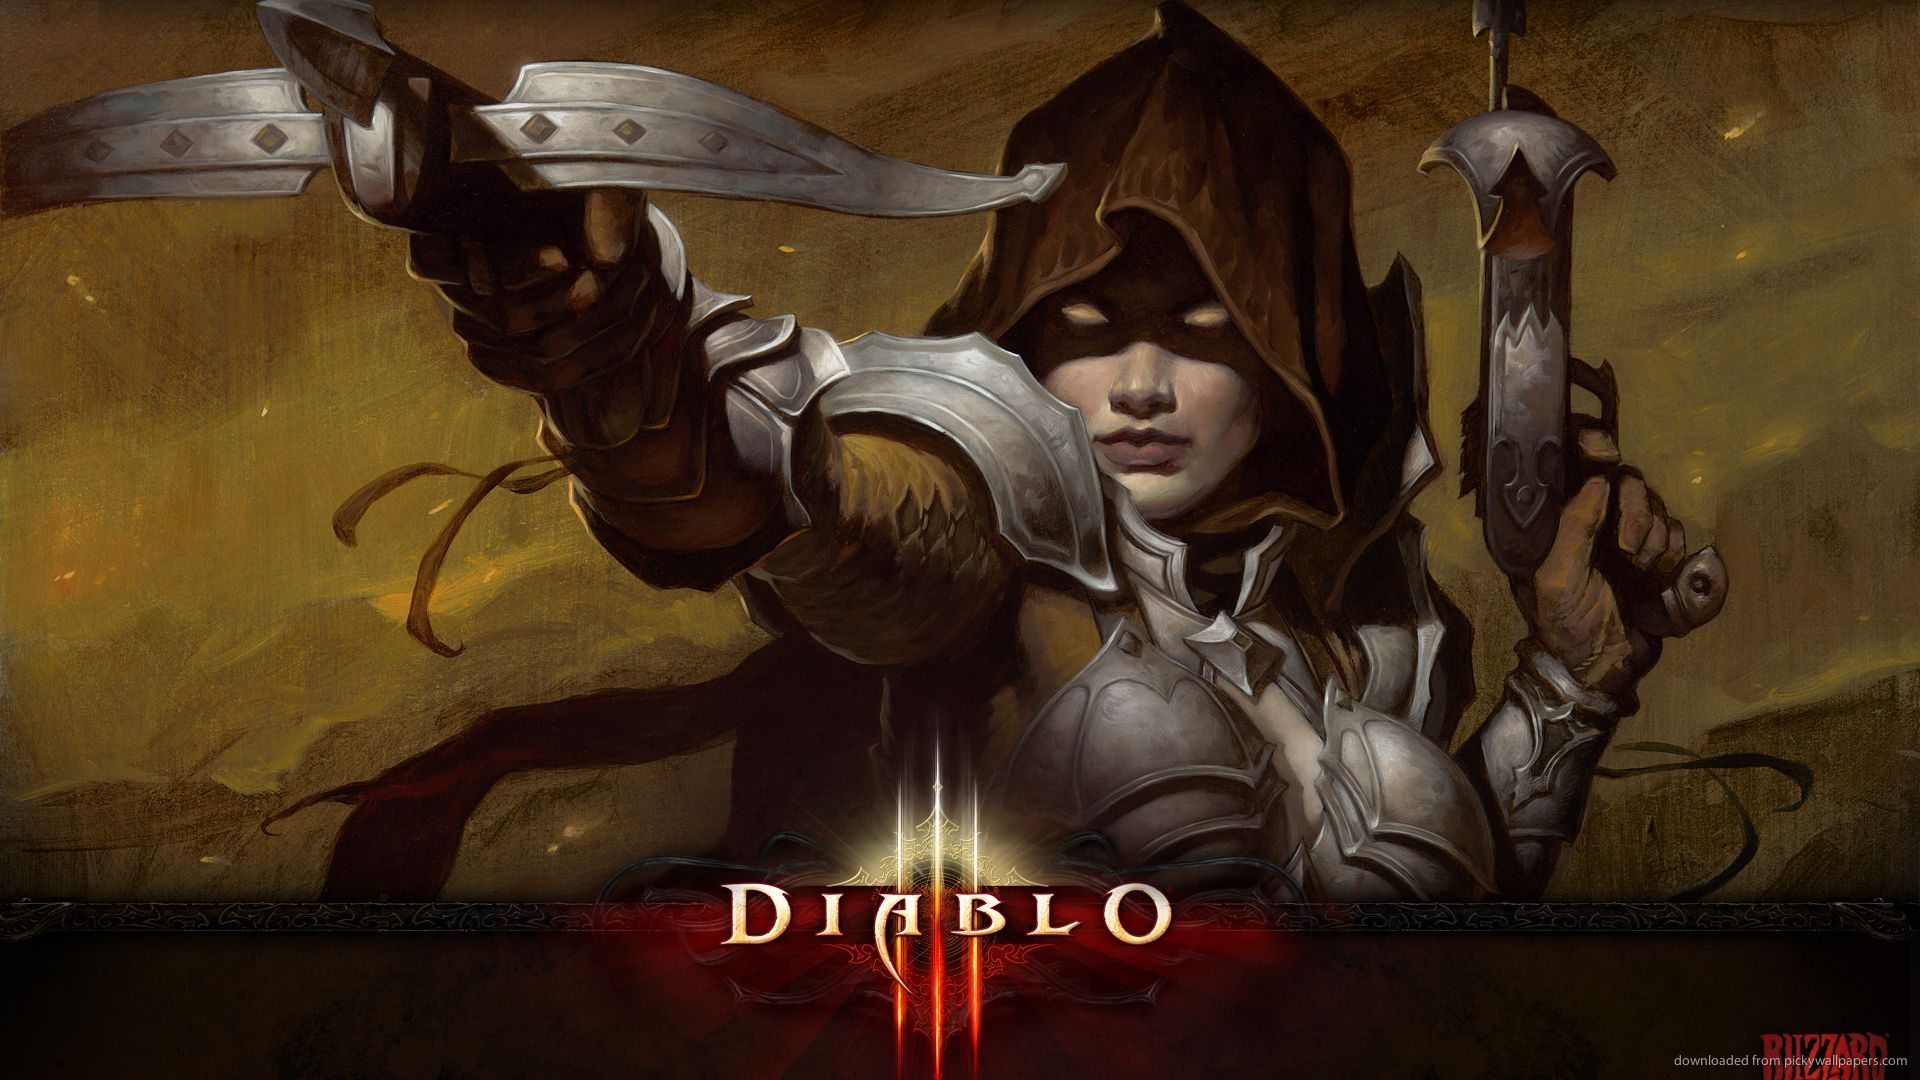 Download 1920x1080 Diablo 3 Unlocked Exclusive Demon Hunter Wallpaper